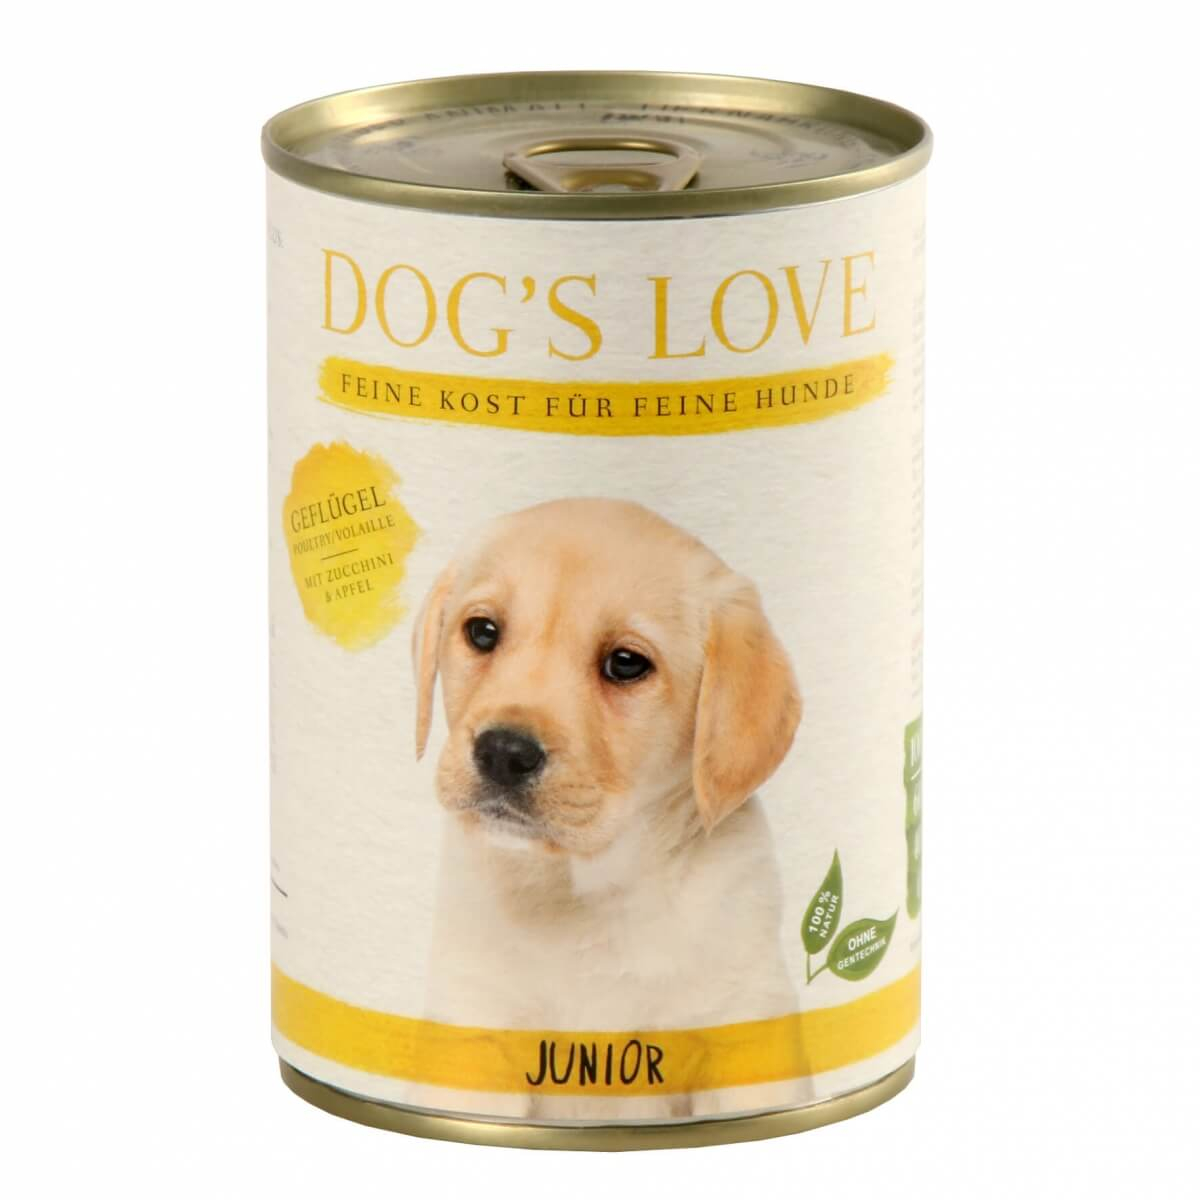 Patê de Aves DOG'S LOVE para cachorros e junior